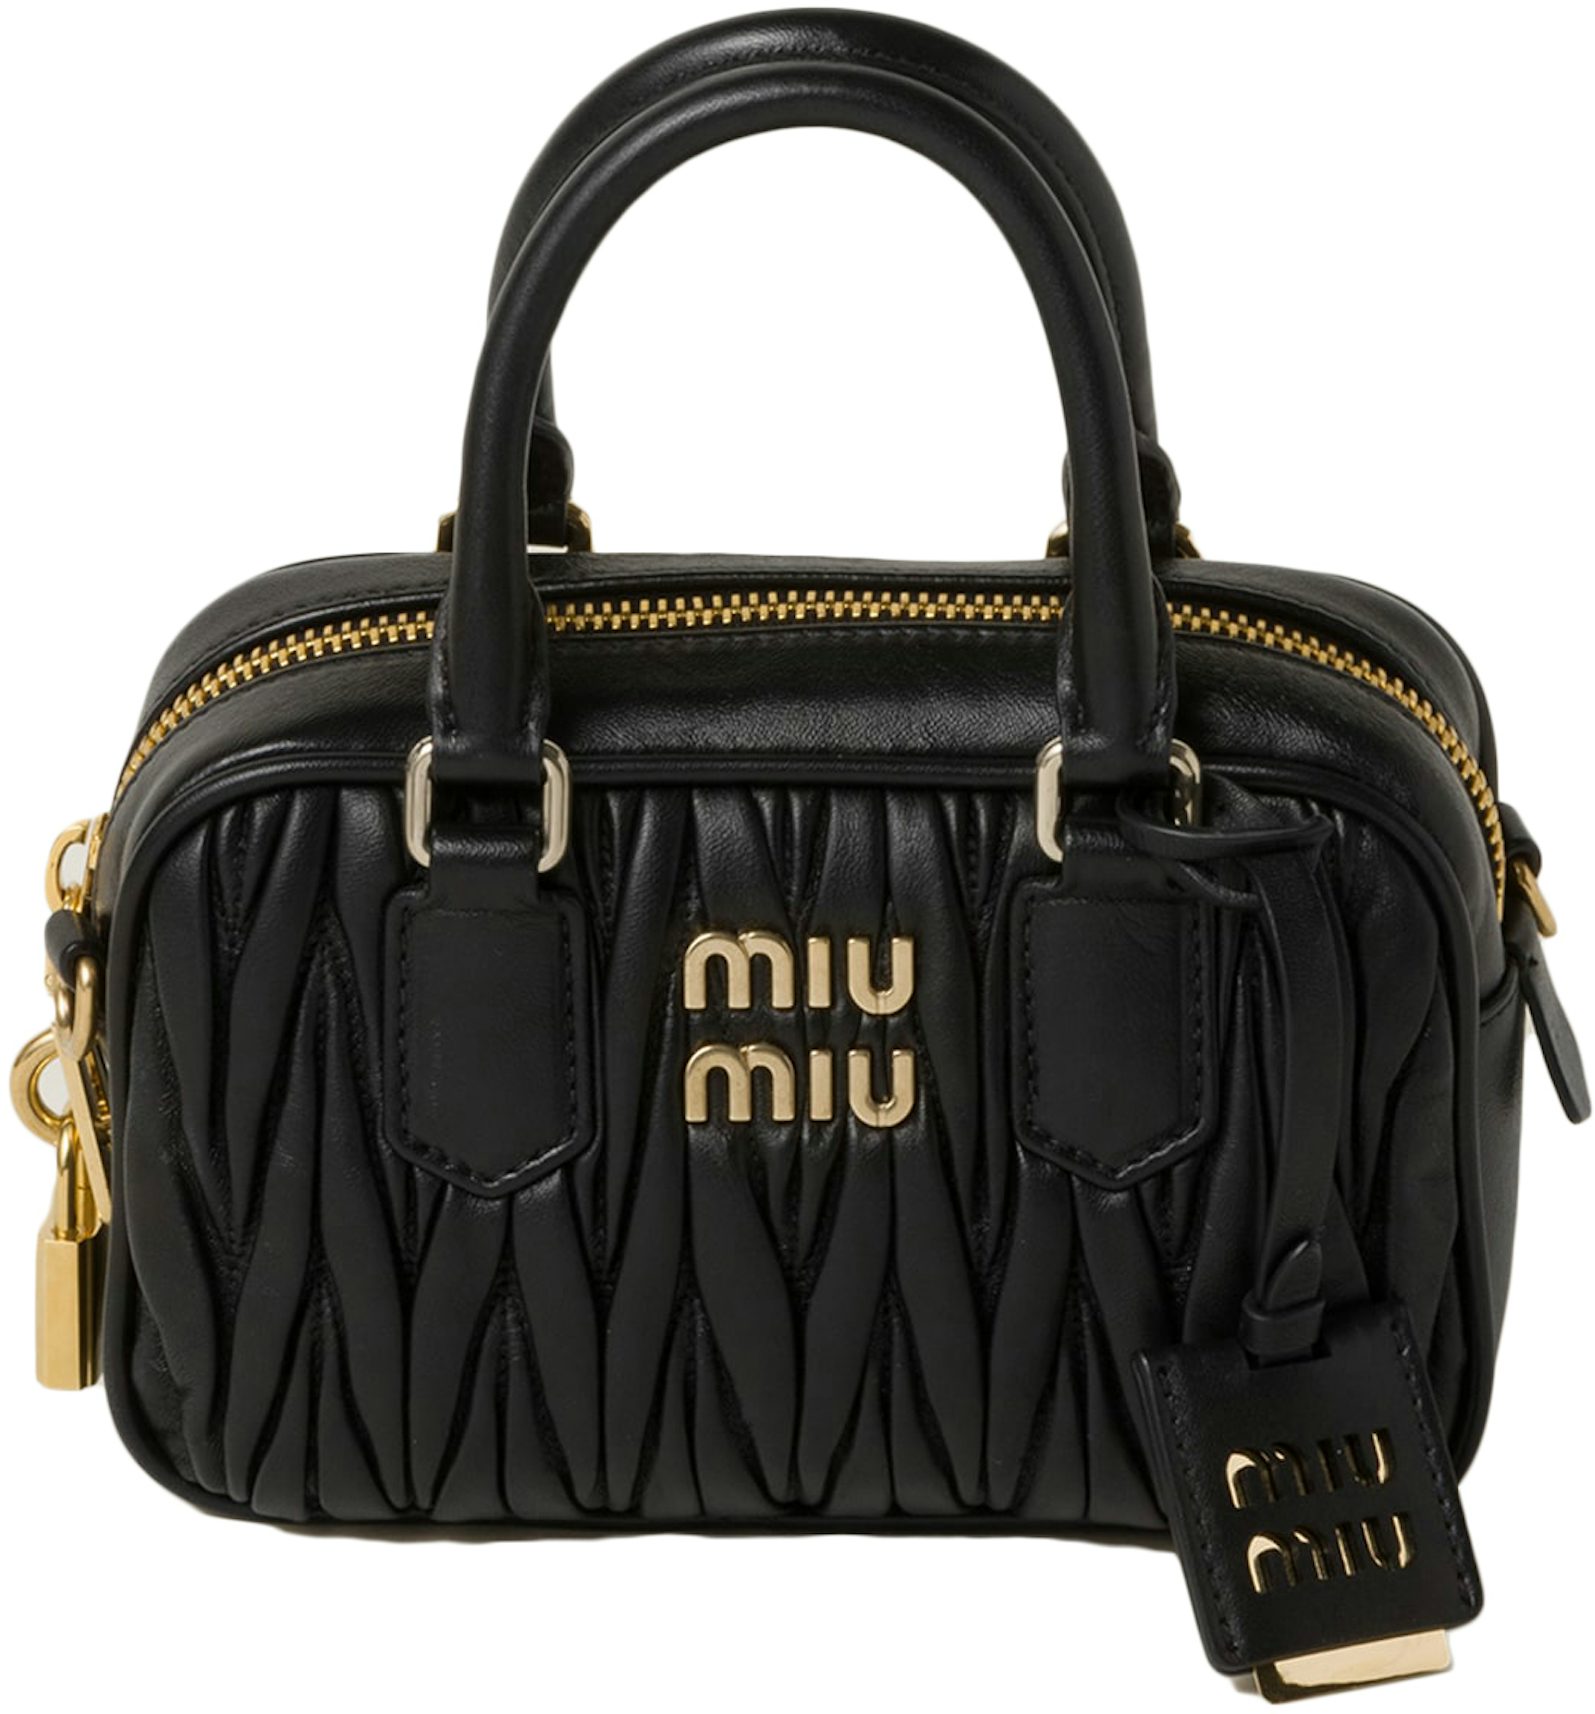 Matelasse Leather Crossbody Bag in Black - Miu Miu